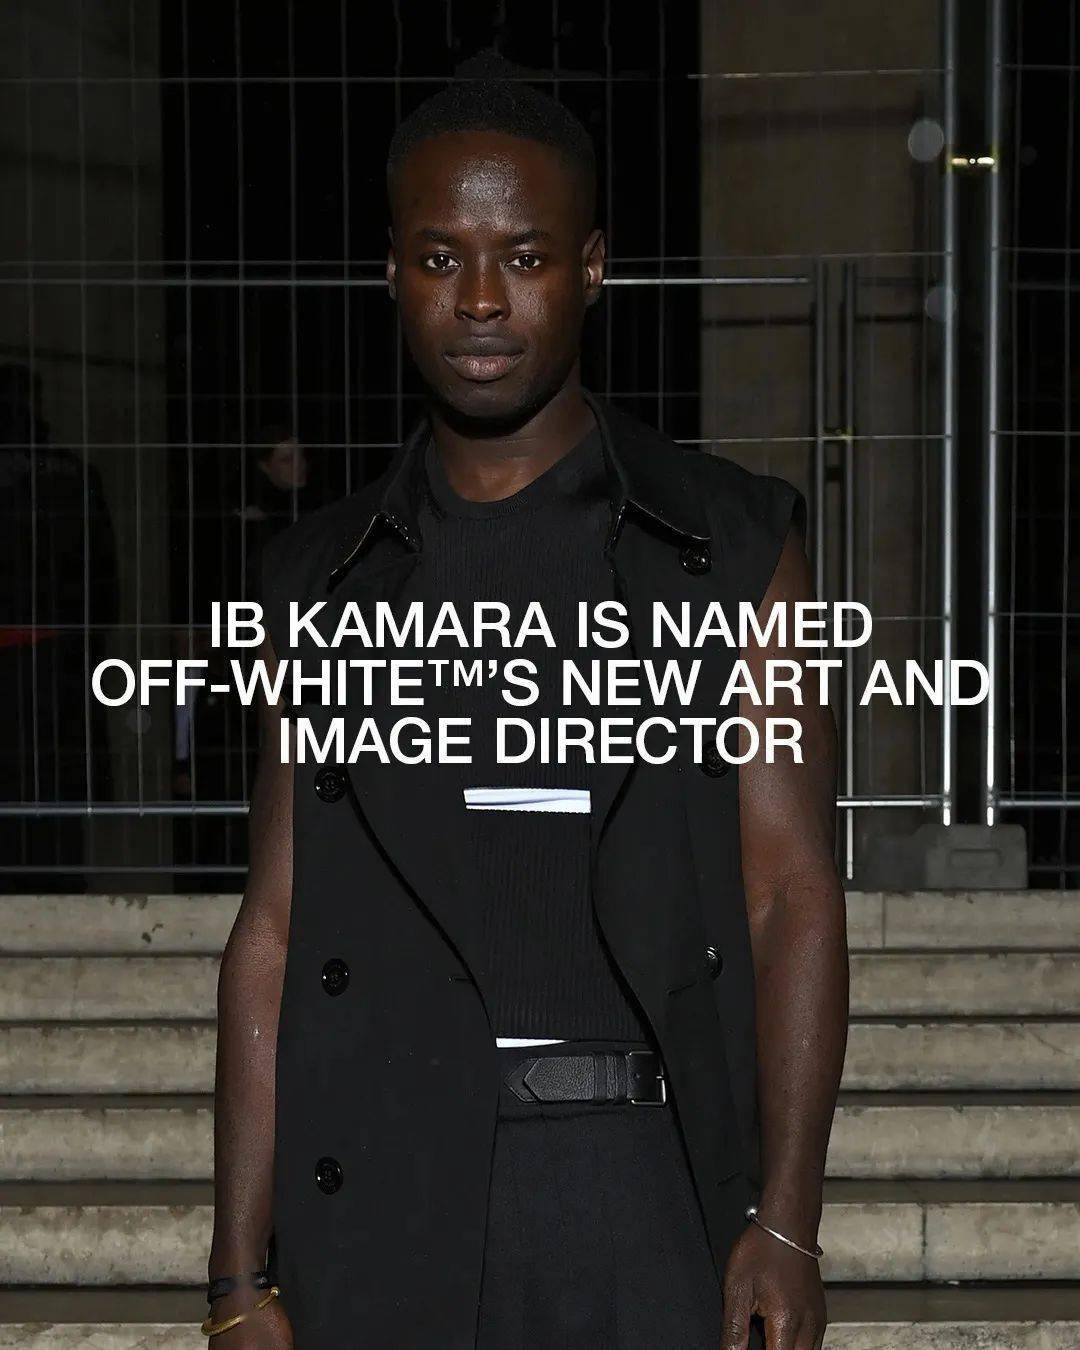 Ib Kamara Named Art and Image Director at OFF-WHITE